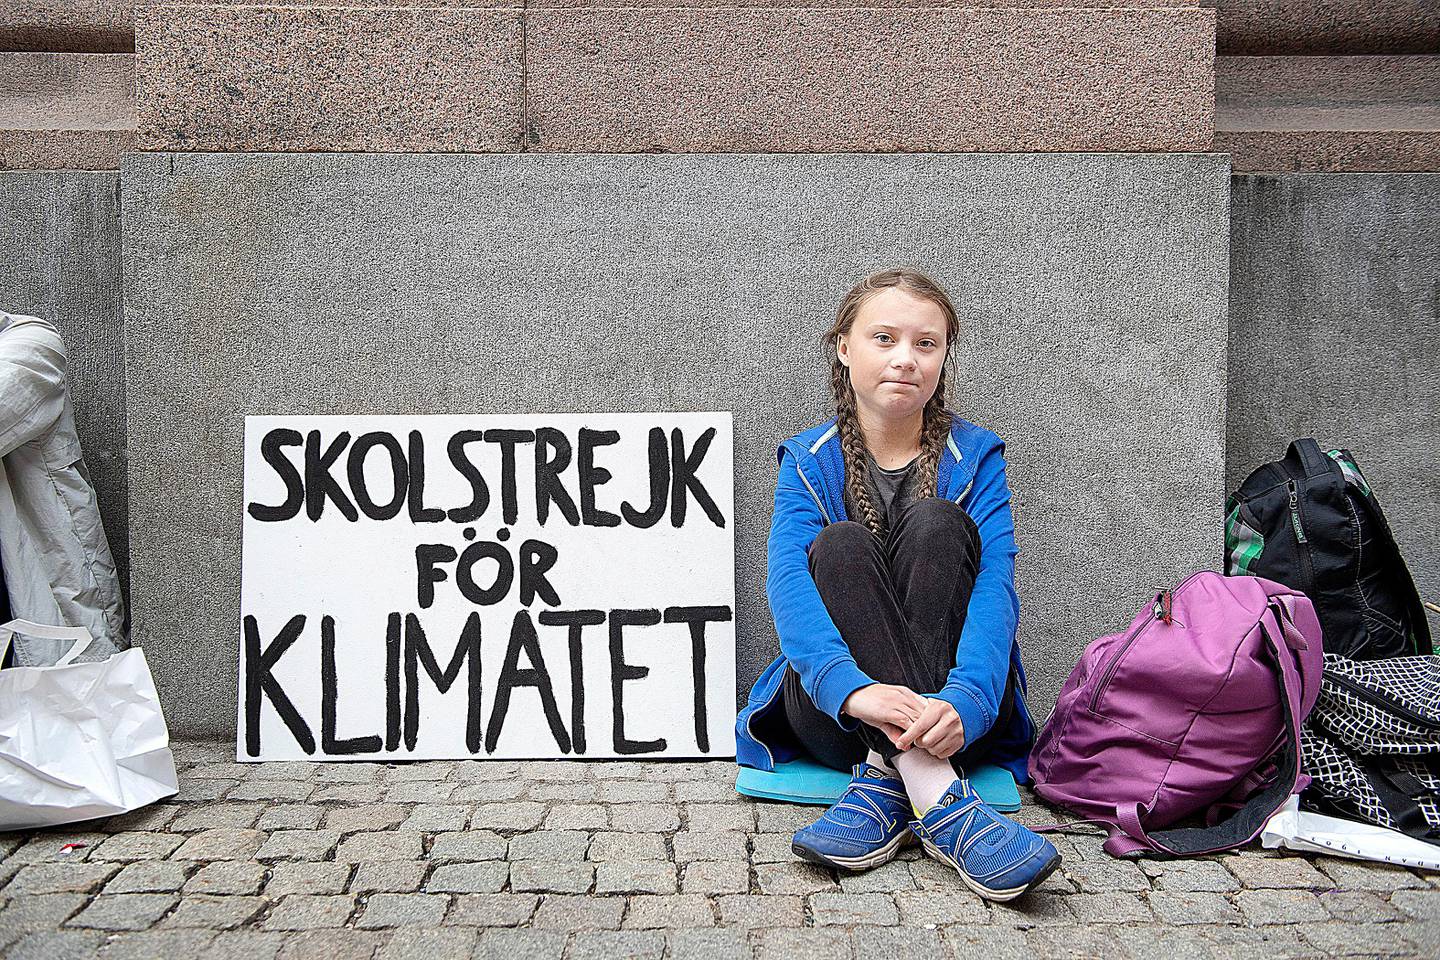 STOCKHOLM, SVERIGE 20180822.
Greta Thunberg på 15 år er i streik fra skolen, hun sitter utenfor Riksdagen i Stockholm, og tenker å fortsette med det helt frem til valget.
- Siden ingen andre gjør noe med klimaet, så vil jeg gjøre det. Det er mitt moralske ansvar å gjøre noe, sier hun.
Foto: Jessica Gow/TT NYHETSBYRÅN / NTB scanpix